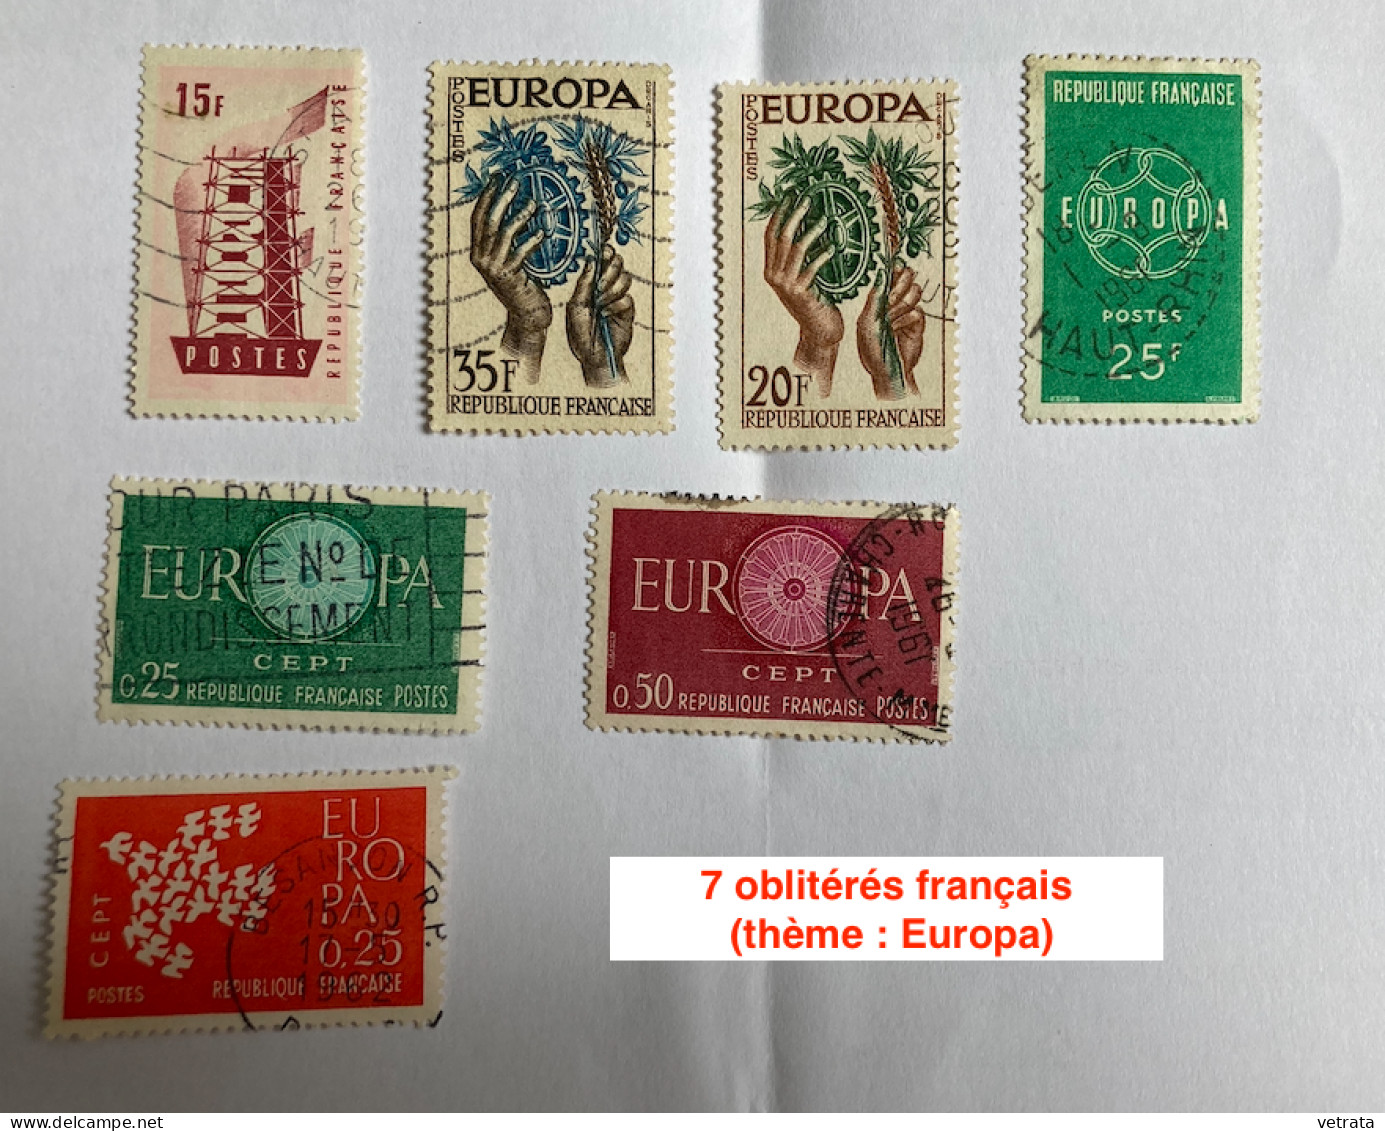 11 Enveloppes Premier Jour :  Europa  (1959/71 avec 14 timbres Europa) & 2 Cartes Europa (Timbre Bleu & Timbre Rouge - 1